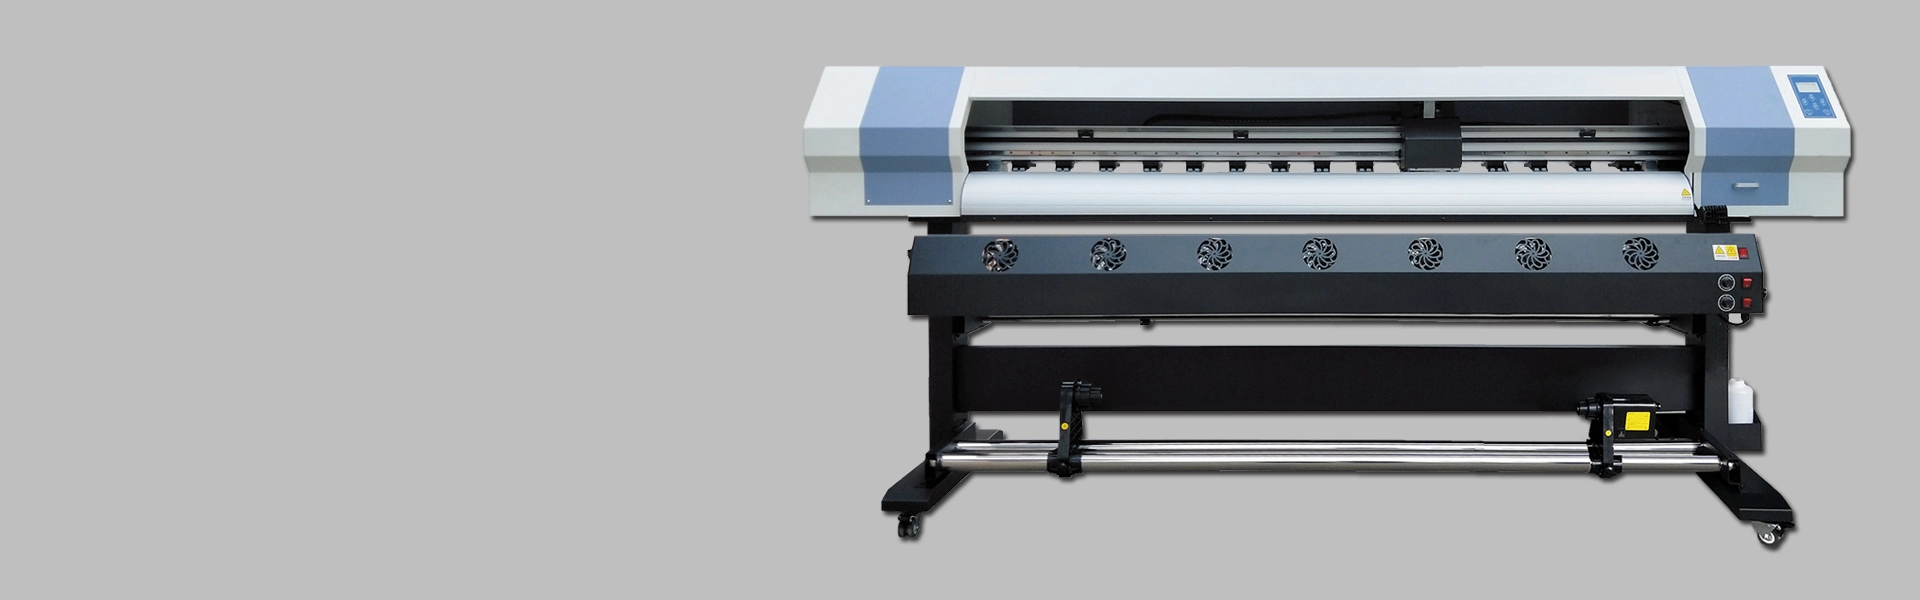 1.6m XP600 Printer